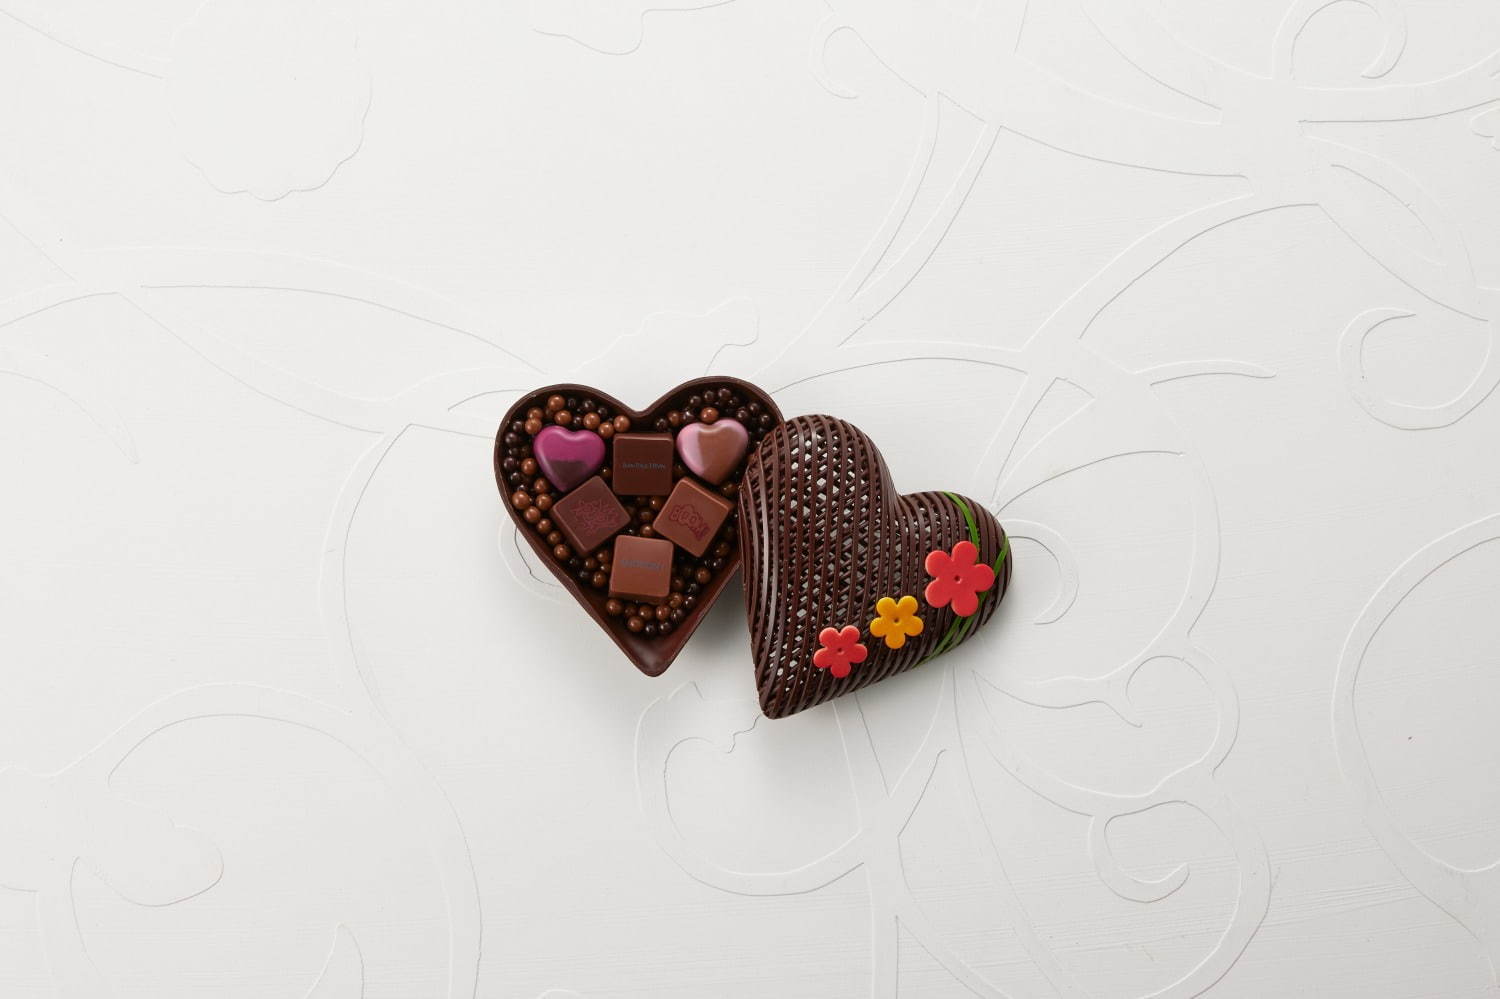 ジャン ポール エヴァン バレンタイン21 限定ボンボン ショコラをポップな花柄ボックスに ファッションプレス